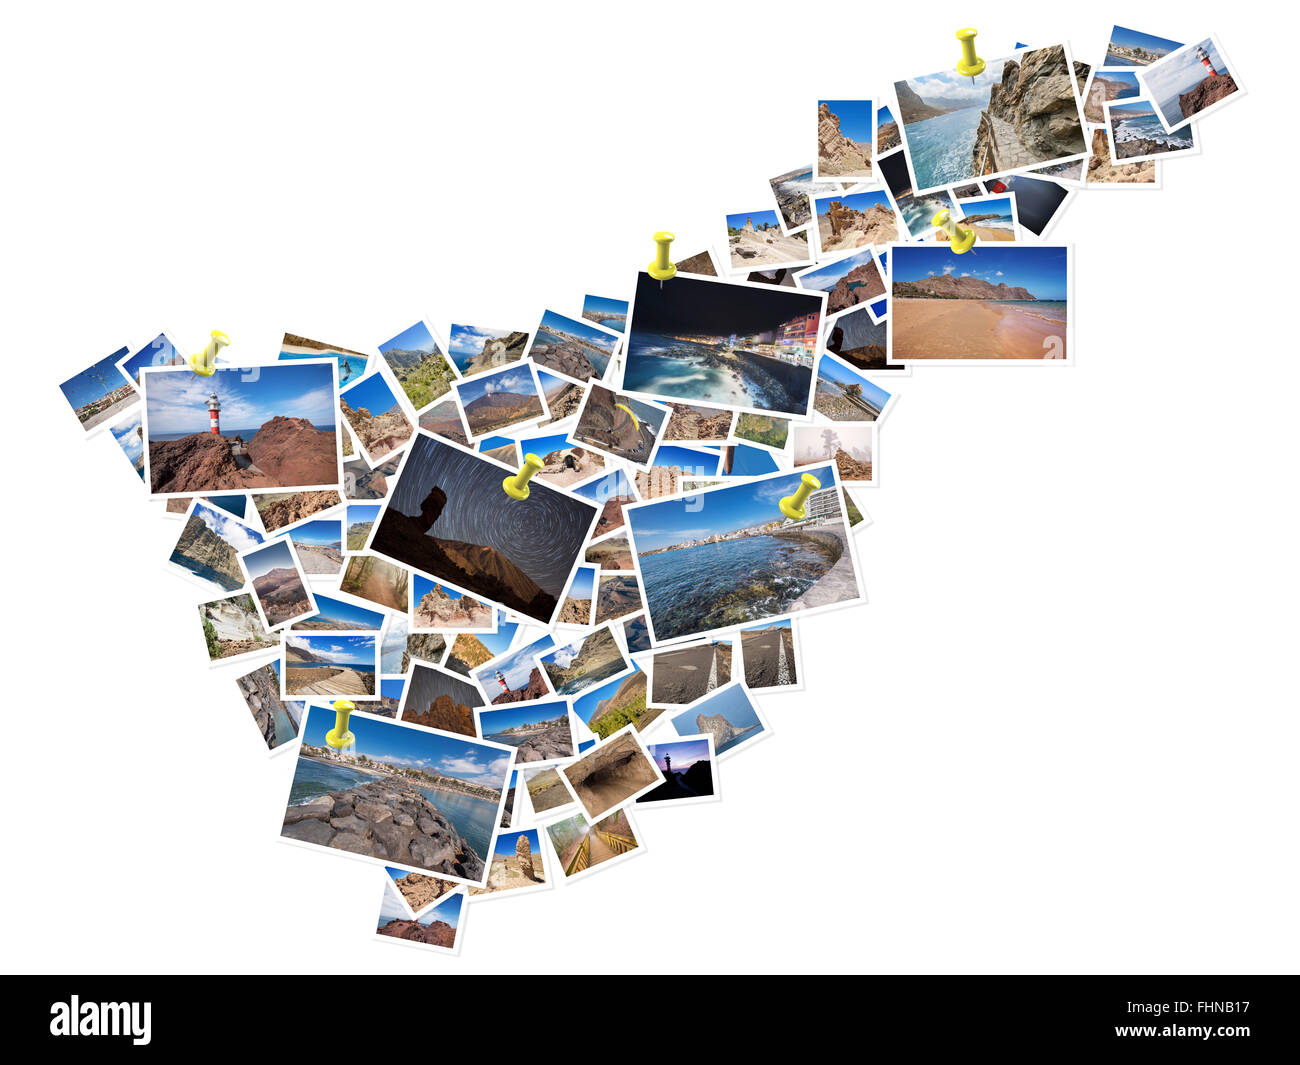 Un collage delle mie migliori fotografie di viaggio di Tenerife, formando la forma dell'isola di Tenerife. La puntina gialla che mostra le posizioni Foto Stock